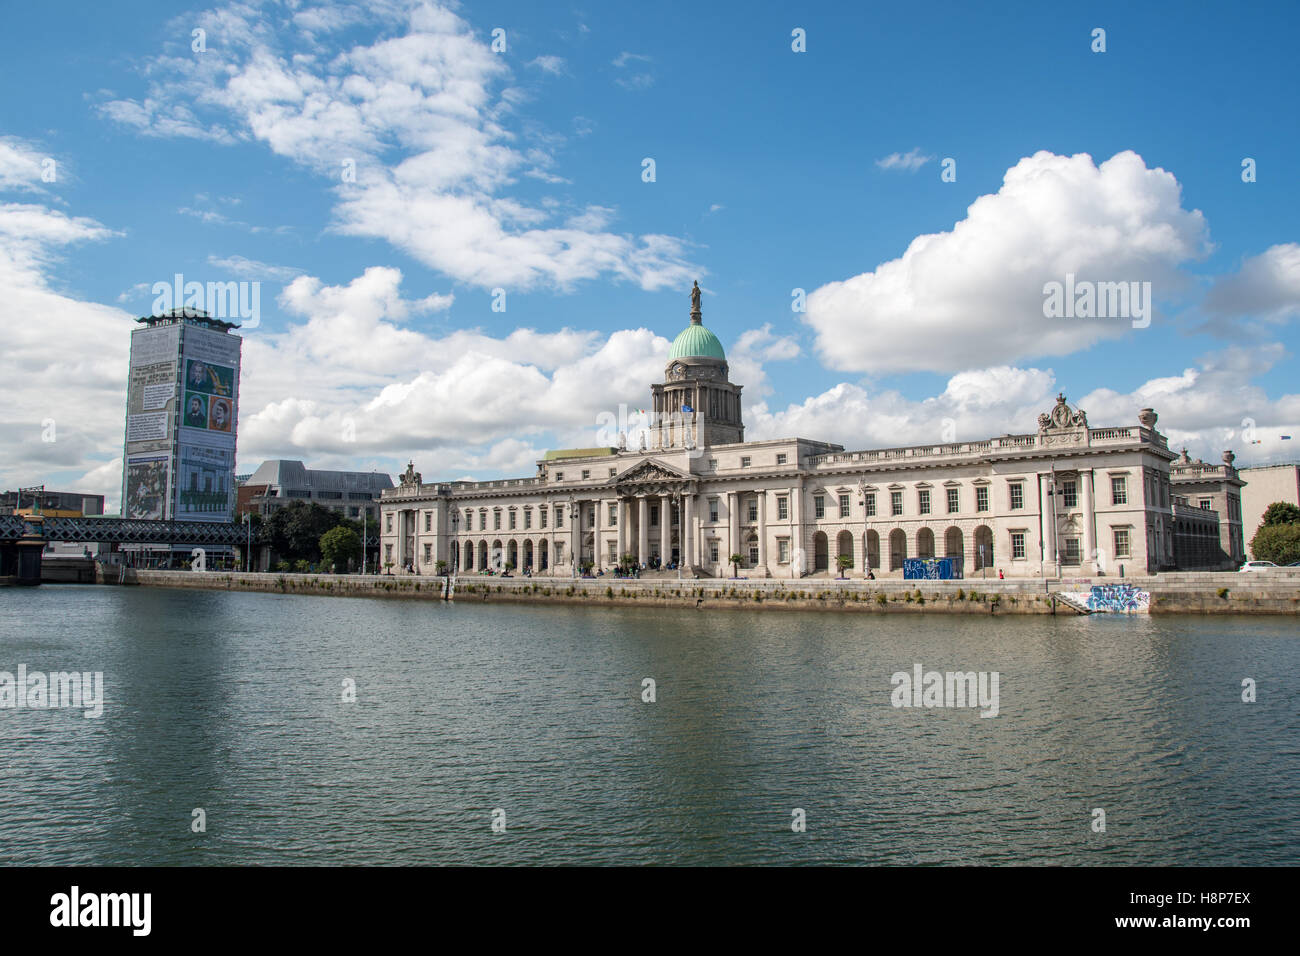 Dublin, Irland - Custom House, neoklassischen Gebäude in Dublin, Irland beherbergt die Abteilung des Gehäuses aus dem 18. Jahrhundert. Stockfoto